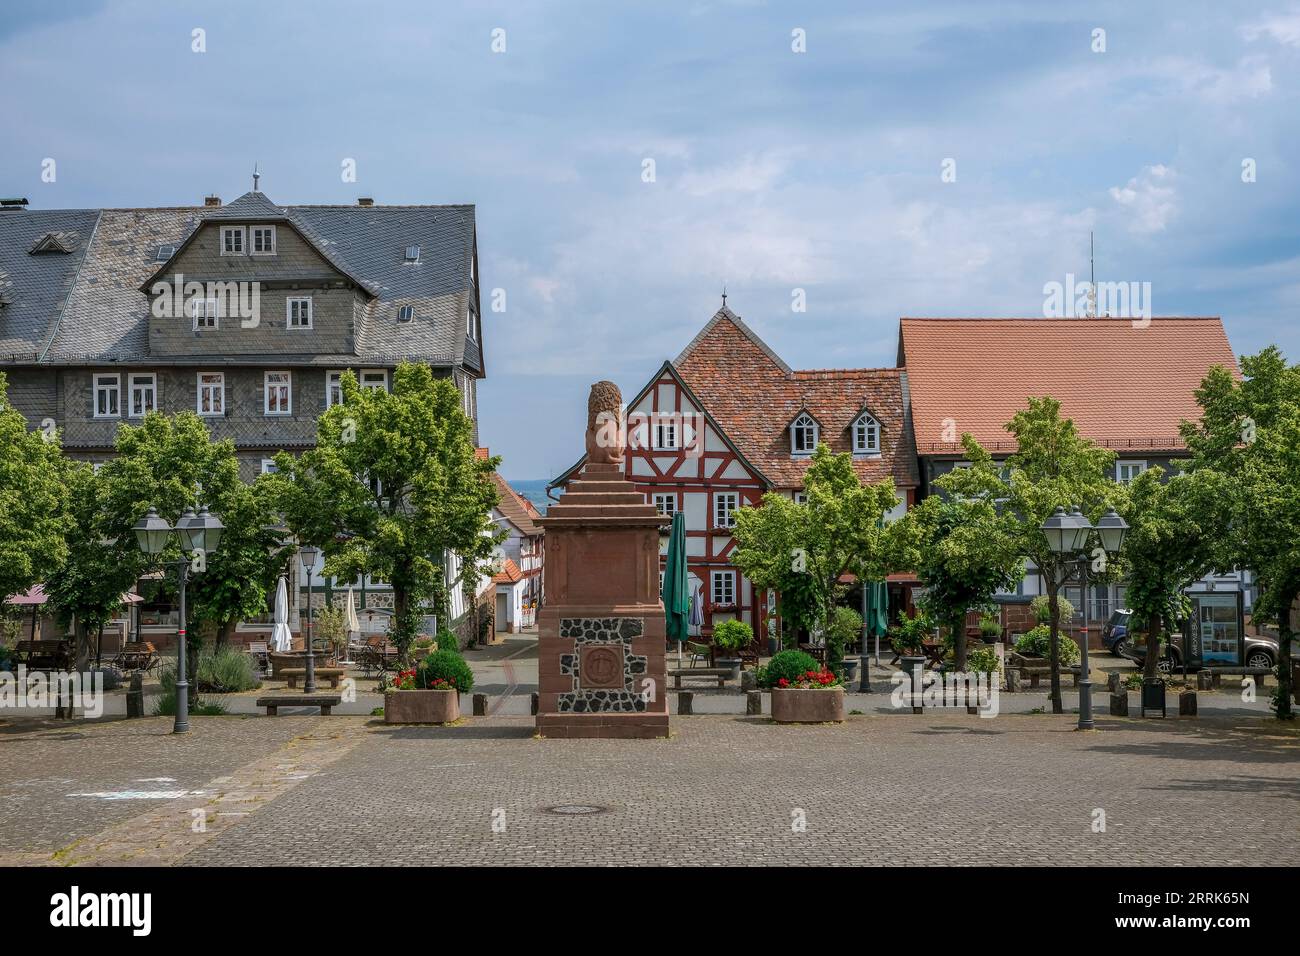 Amöneburg, Hessen, Deutschland - Altstadt. Marktplatz. Amöneburg ist eine Kleinstadt im mittelhessischen Stadtteil Marburg-Biedenkopf. Sie liegt auf dem 365 m hohen Amöneburg mit der Burg Amöneburg an der Spitze. Stockfoto